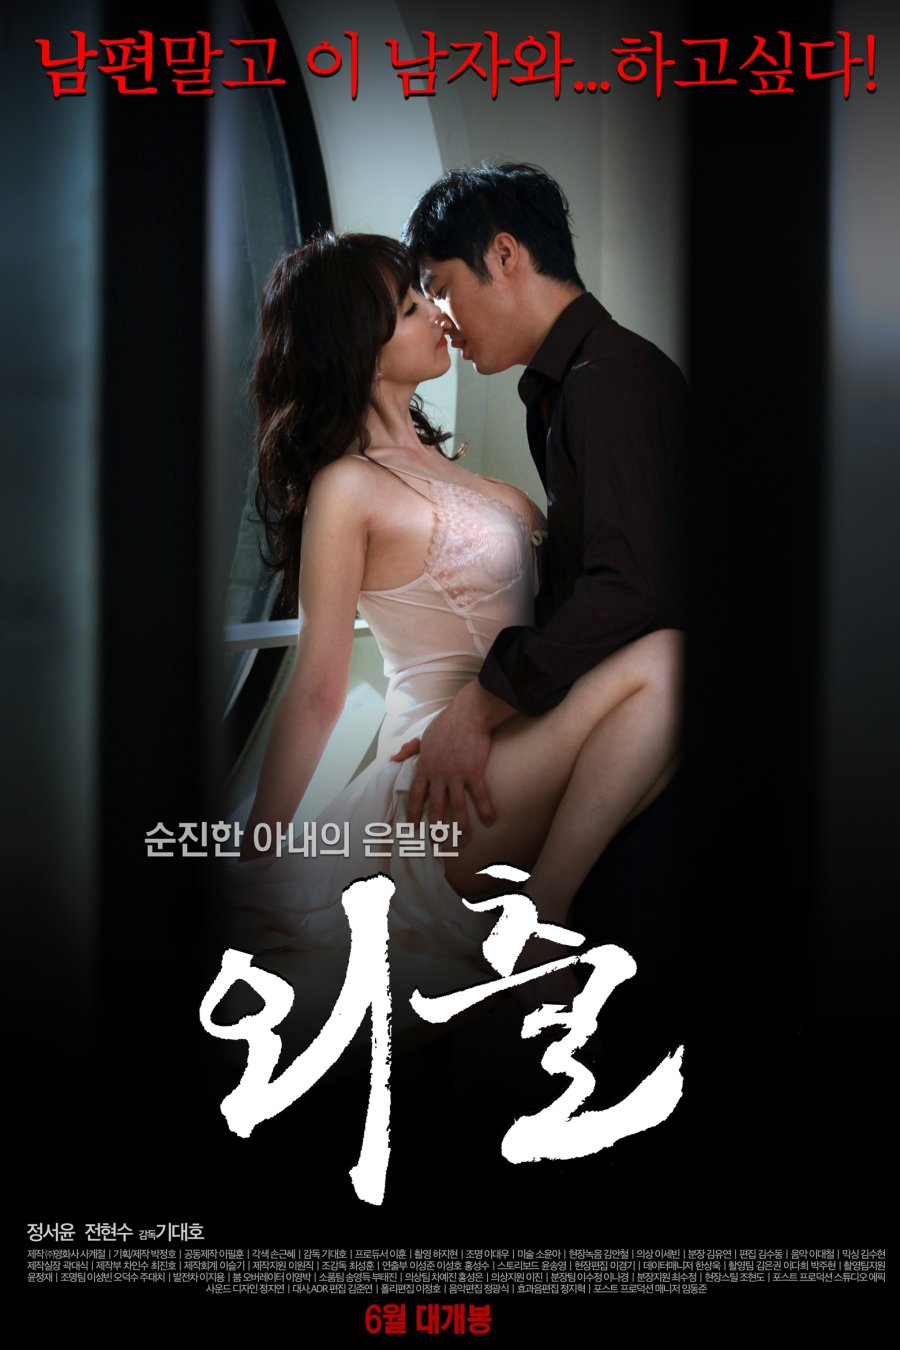 18+ korian movies